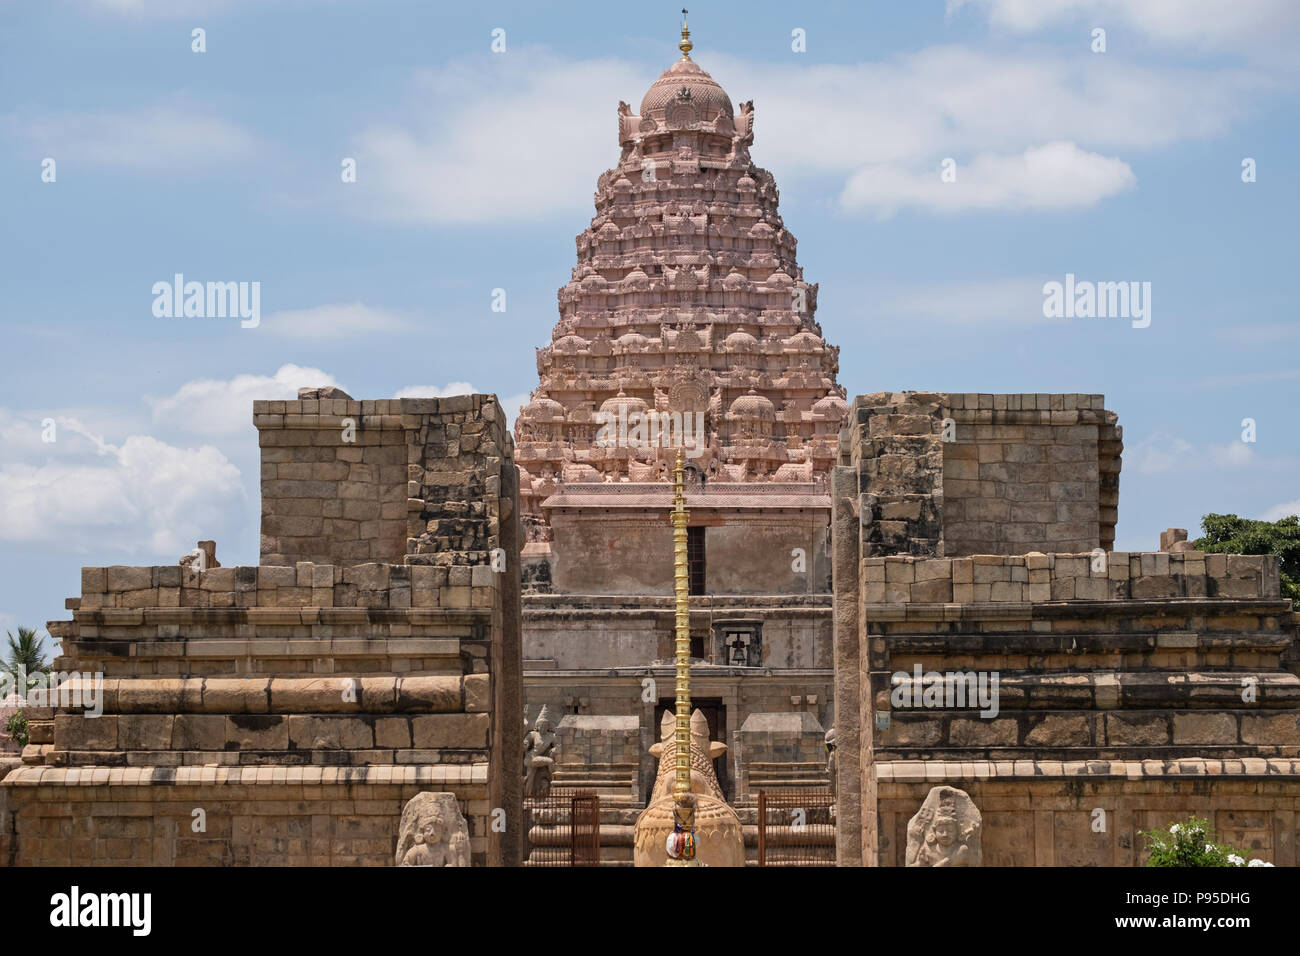 Der Schrein, oder Vimana, des 11. Jahrhunderts an Gangaikondacholapuram Brihadeeswarar Tempel in Tamil Nadu, Indien Stockfoto